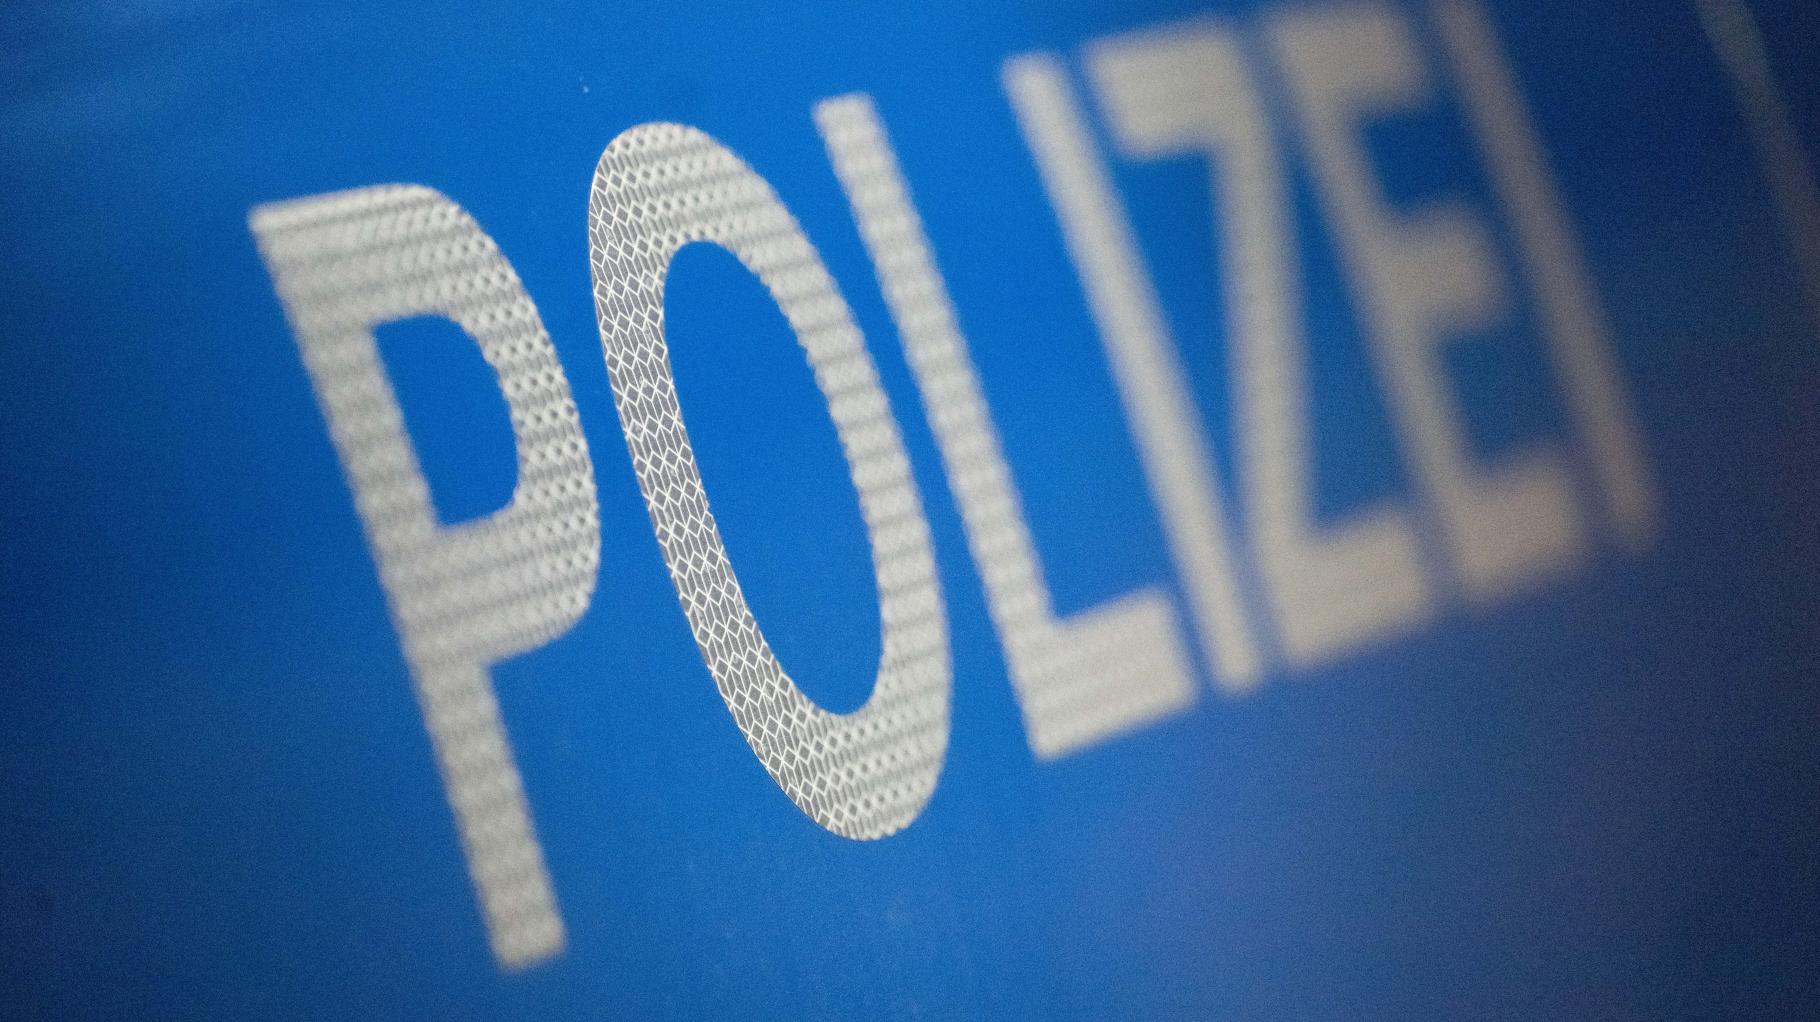 Rostocker Polizei klärt schweren Raub auf